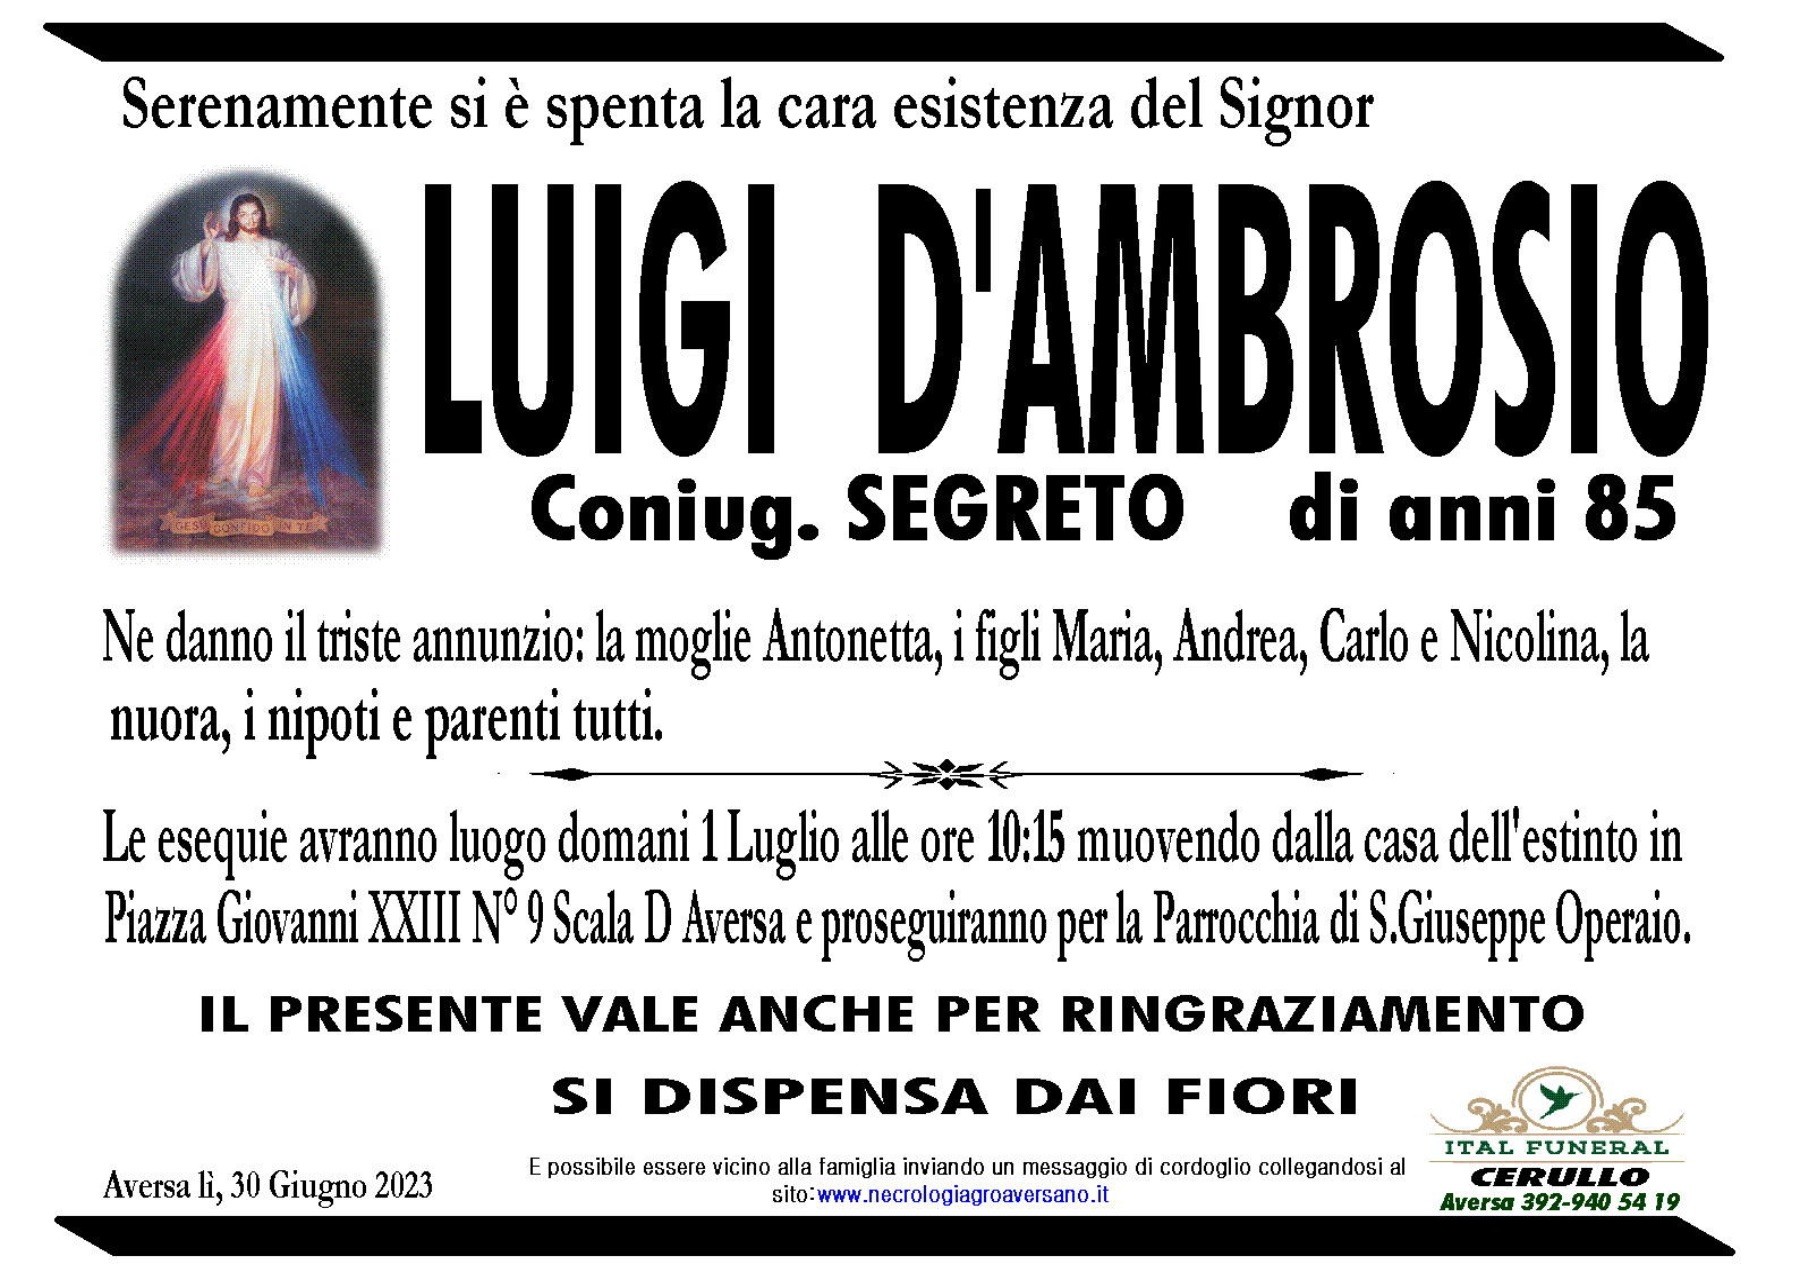 Luigi D’Ambrosio